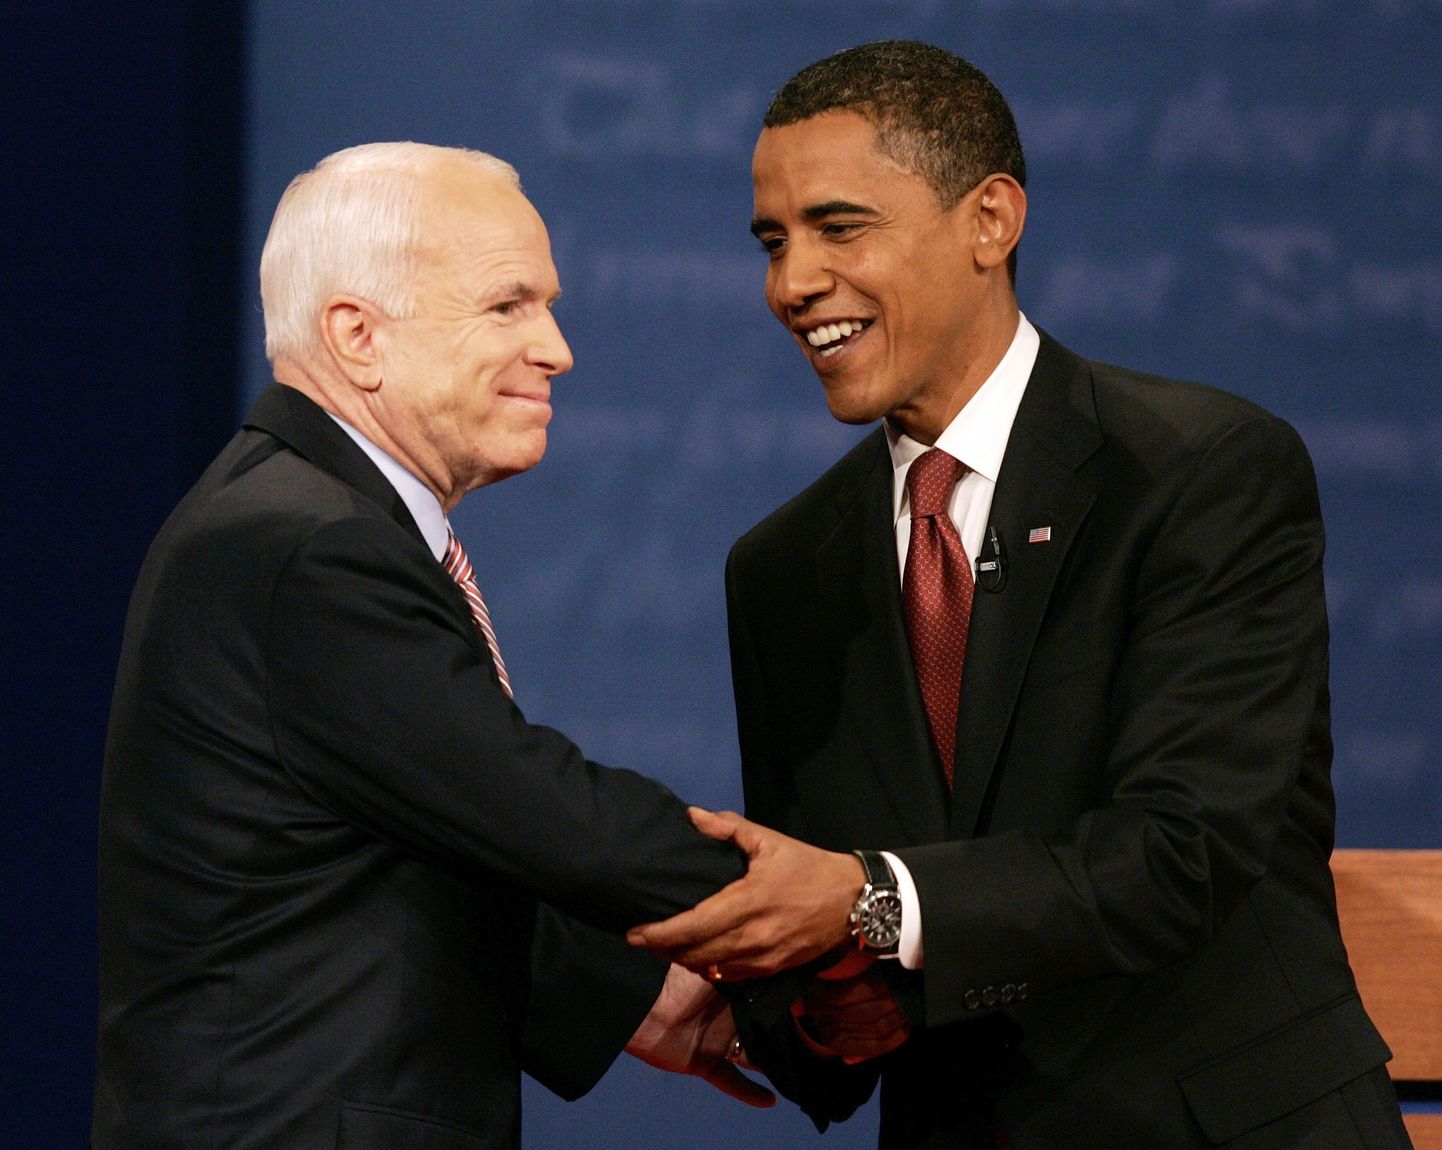 Mis siis, kui Obama oleks valgenahaline ja McCain mustanahaline?